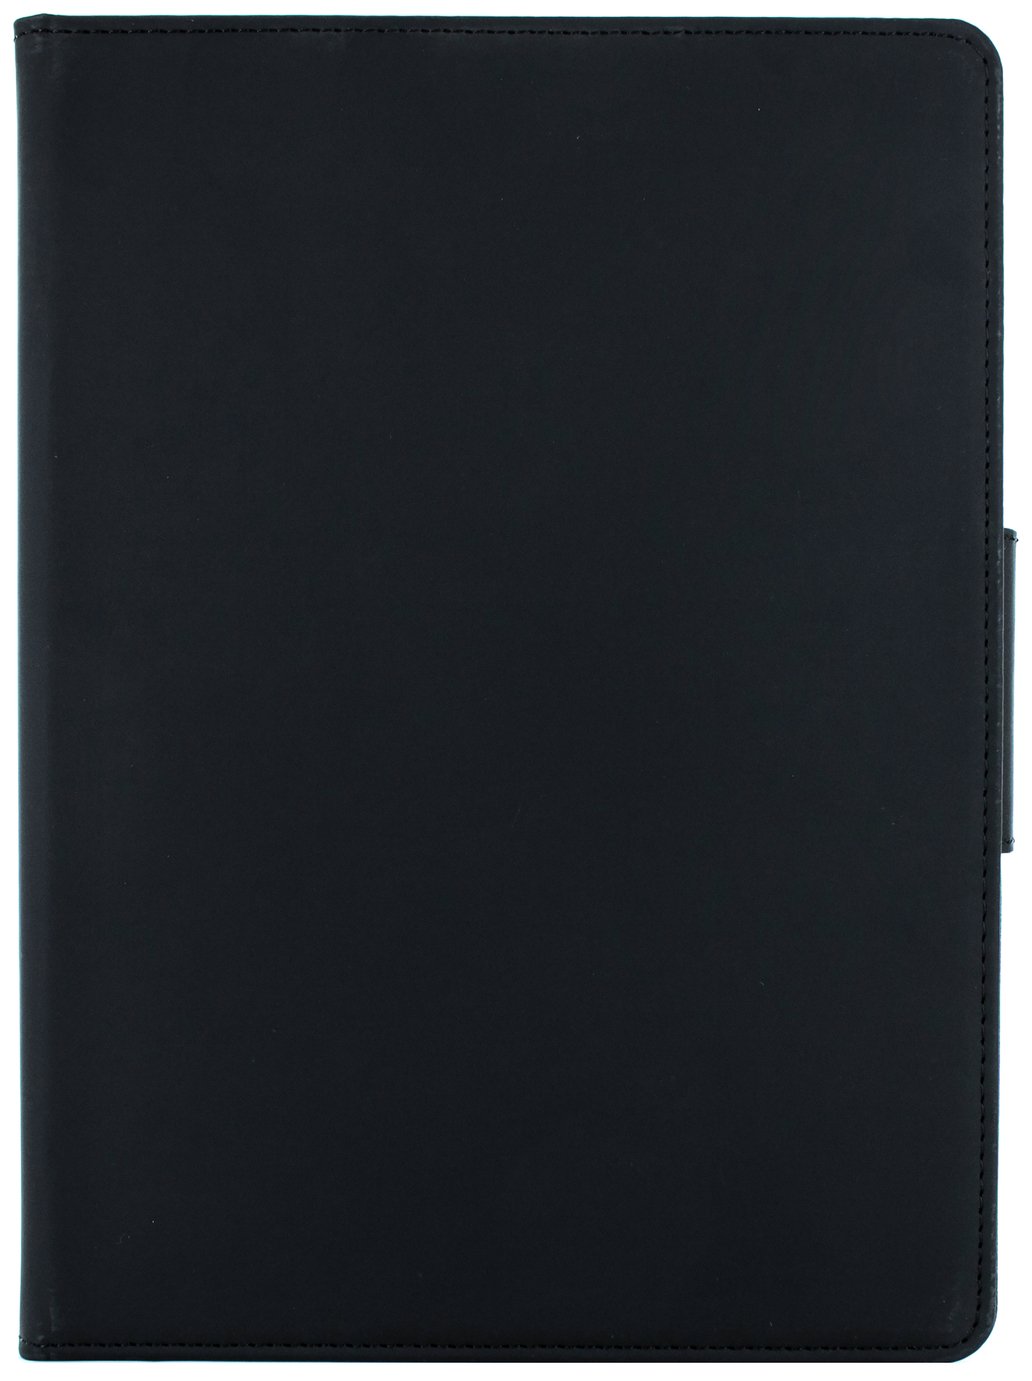 Proporta iPad Pro 11 Inch Folio Tablet Case - Black